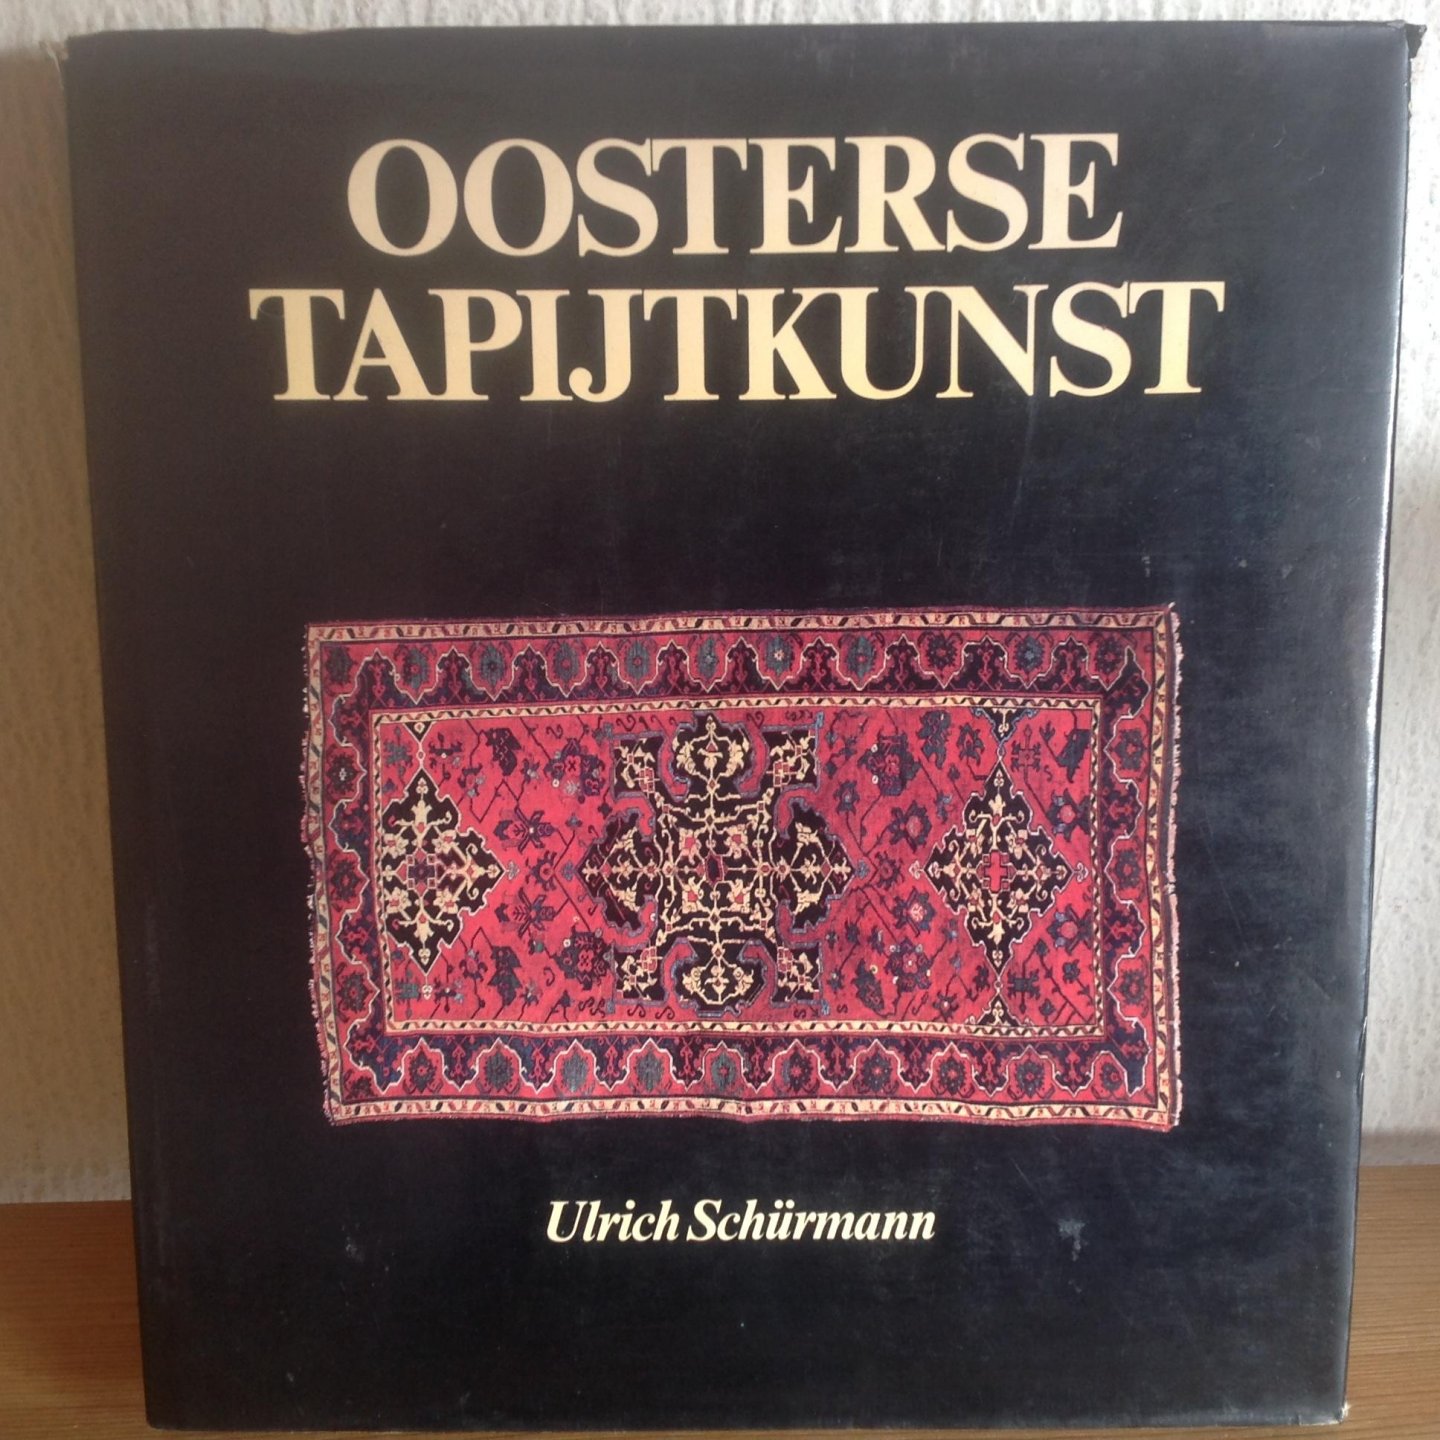 Schurmann - Oosterse tapytkunst / druk 1